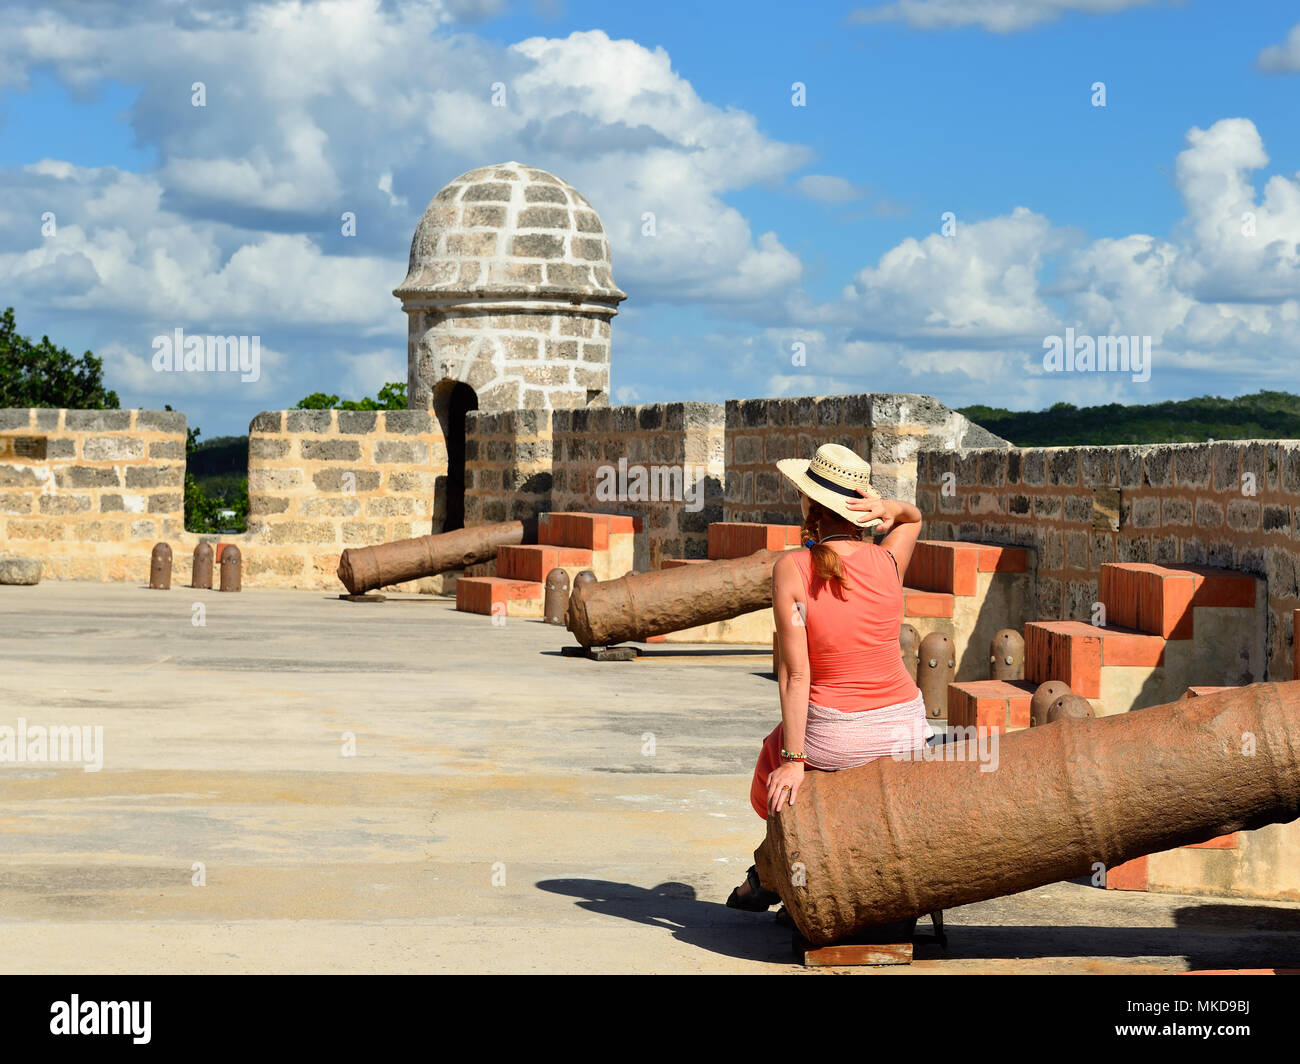 L'touring l'Hôtel Jagua fort est assis sur l'antique Cannon. Fort construit par les Espagnols dans la ville de Cienfuegos à Cuba. Banque D'Images